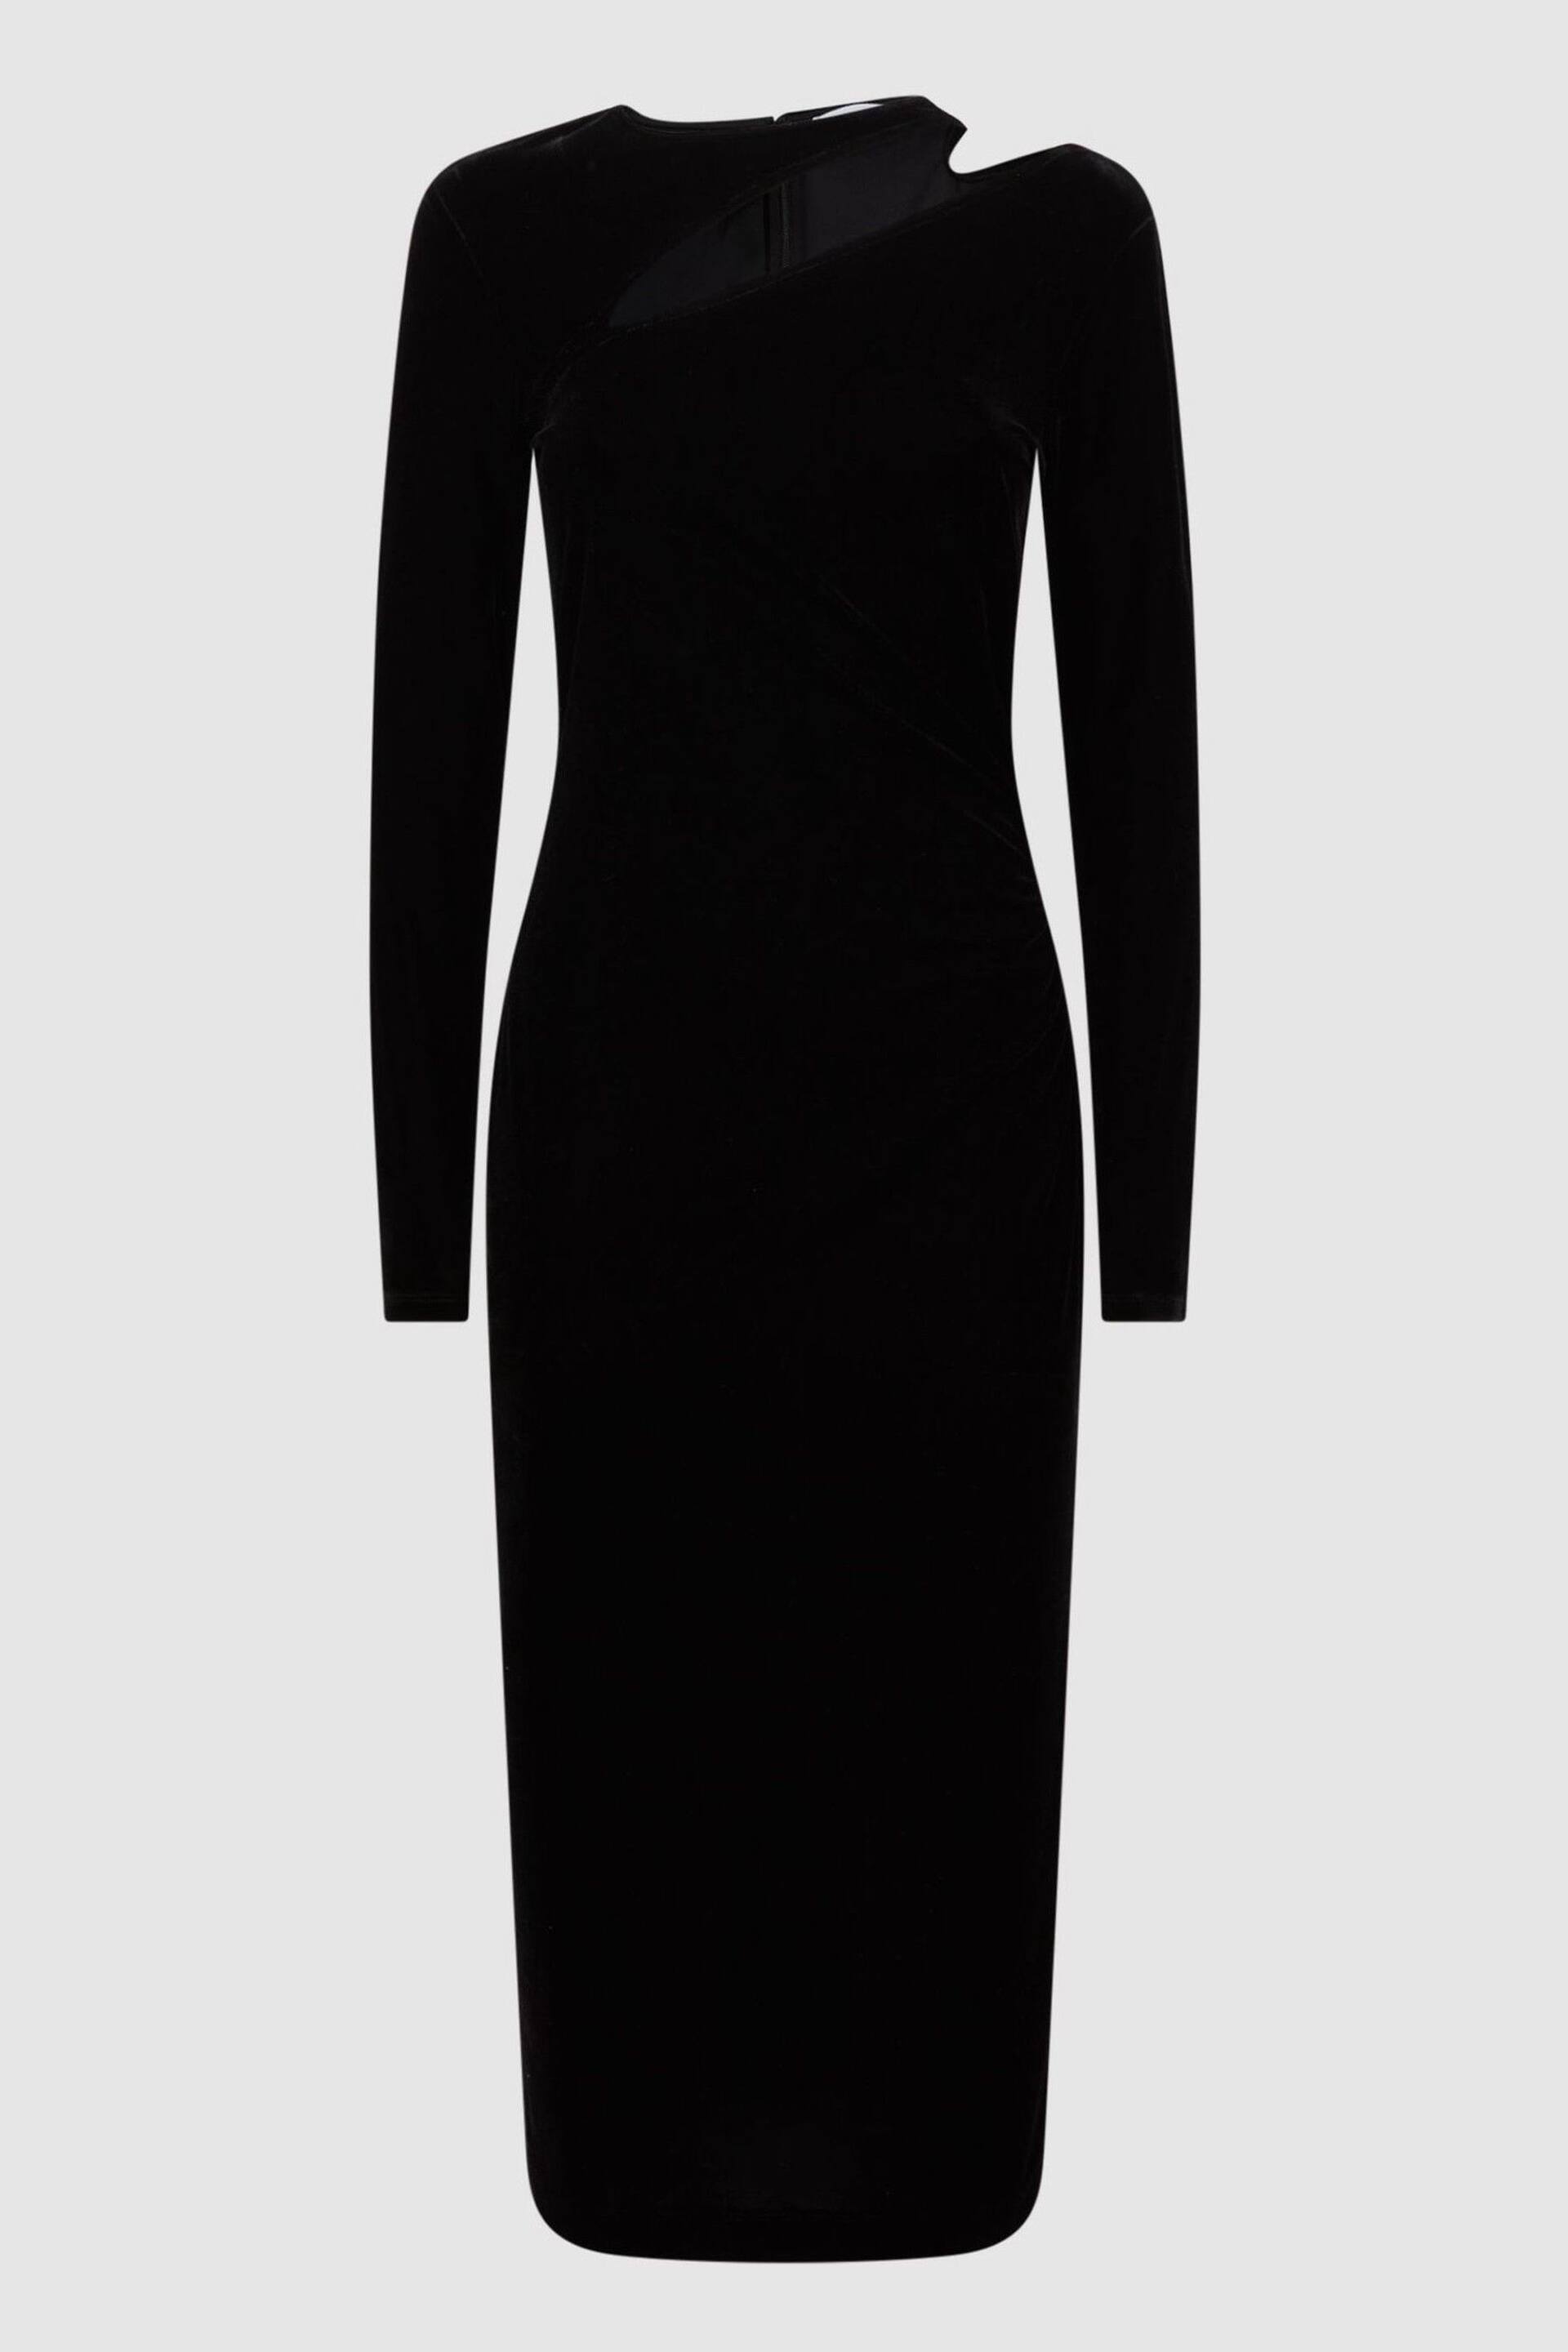 Reiss Black Macey Velvet Cut-Out Midi Dress - Image 2 of 4